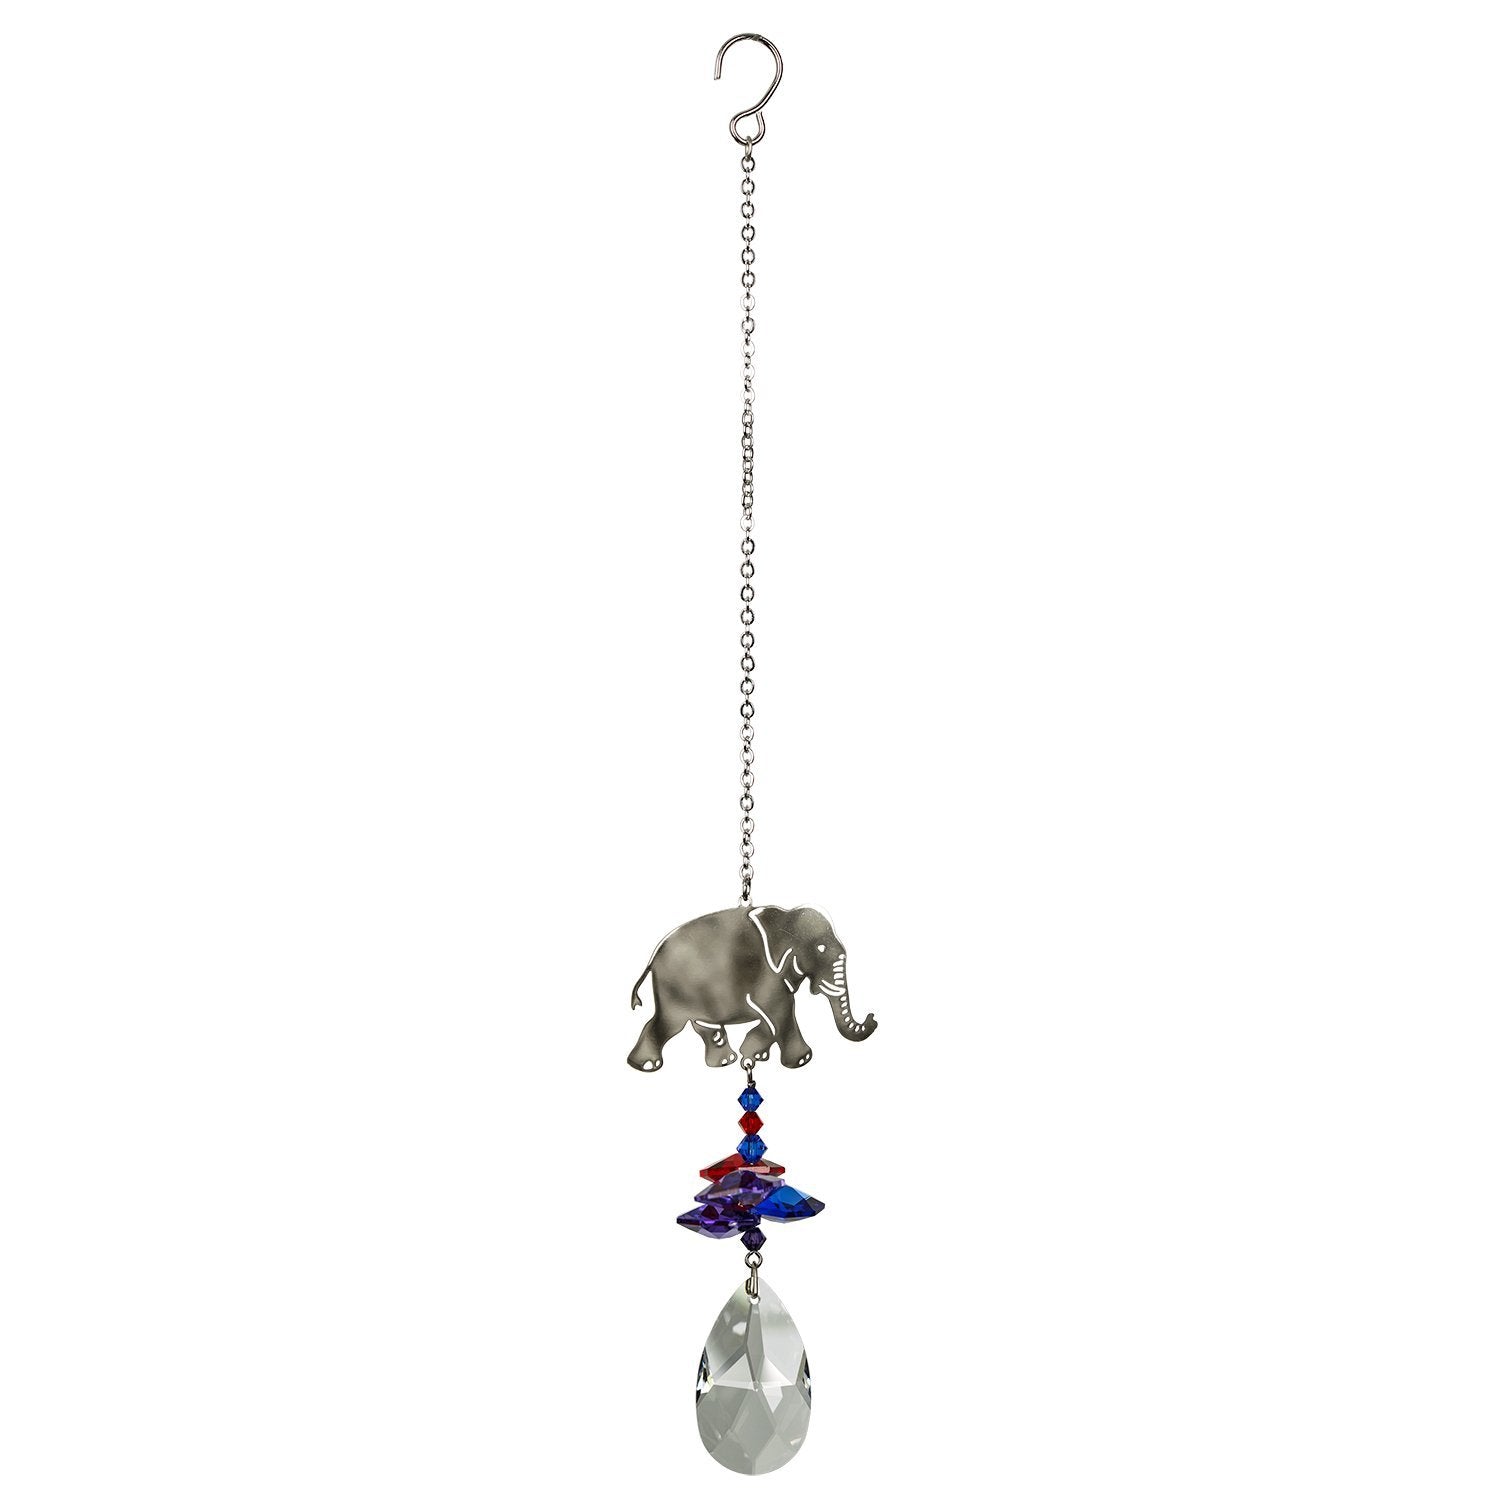 Crystal Fantasy Suncatcher - Elephant full product image